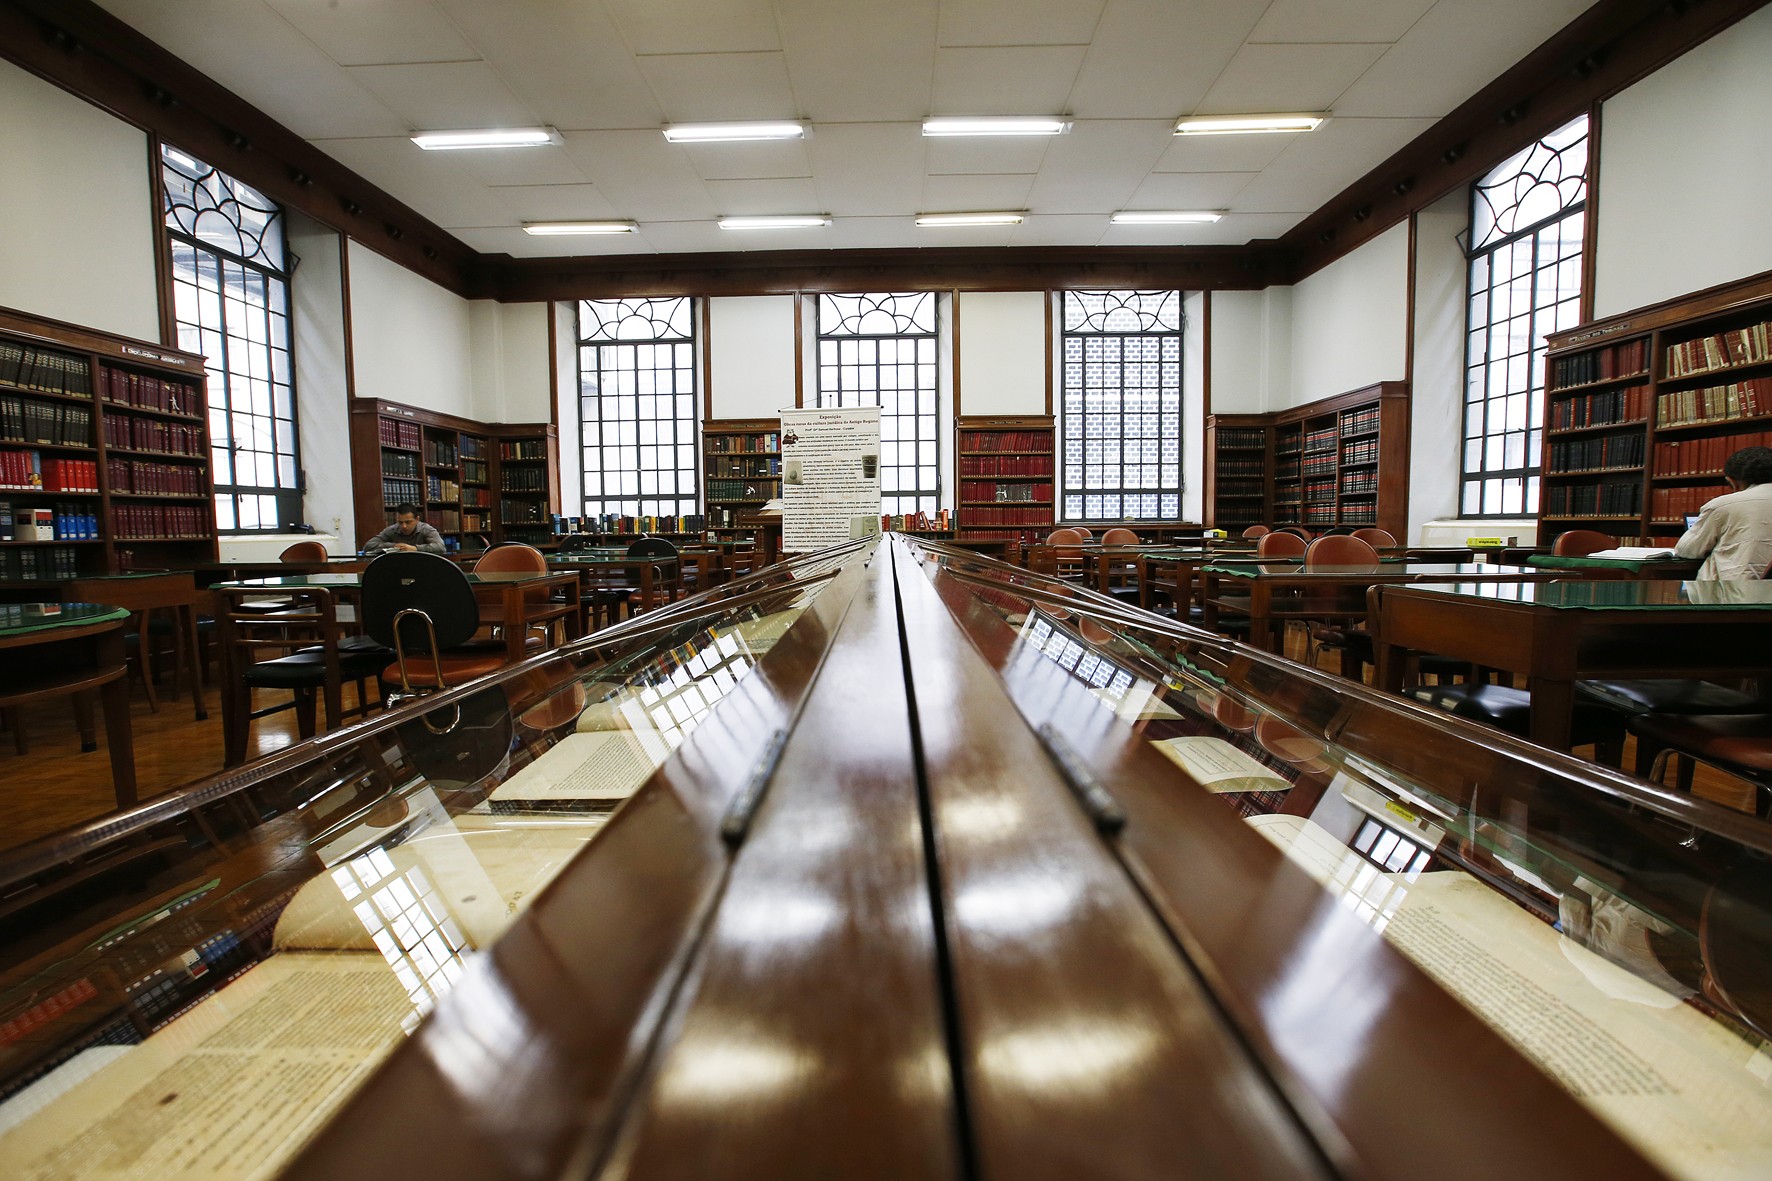 Blog Bibliojurídica da Biblioteca da Faculdade de Direito da UFMG